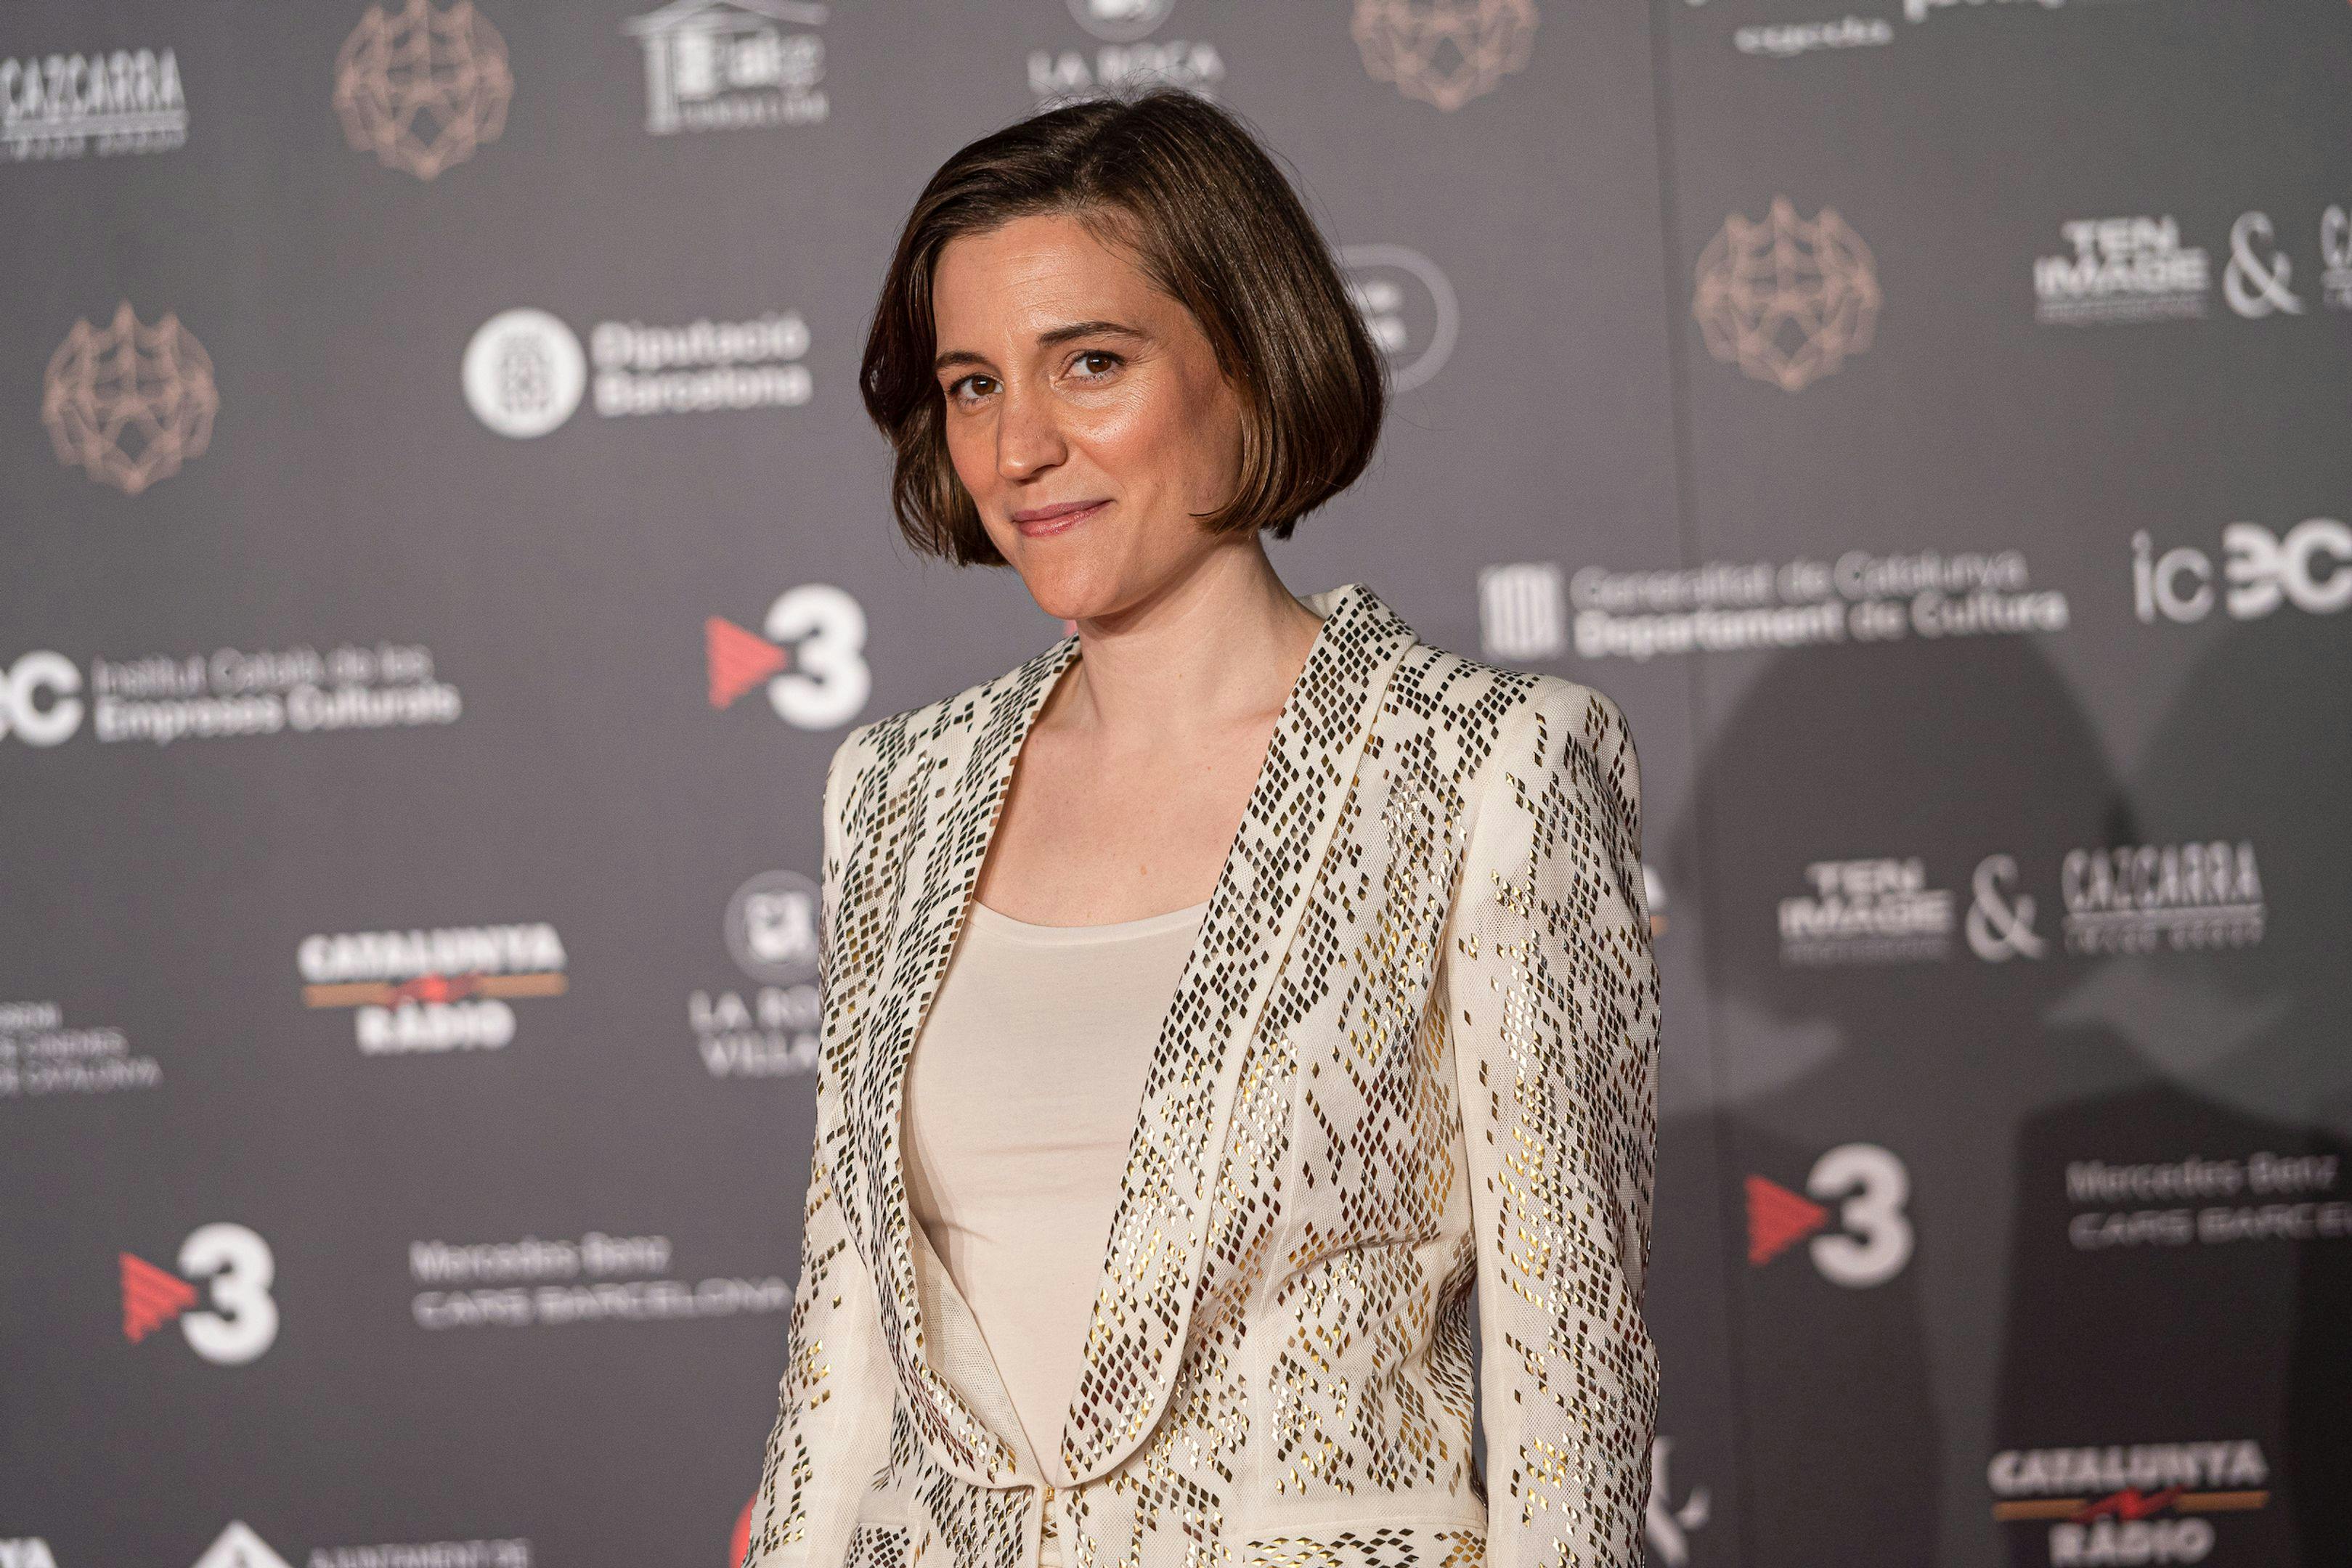 La directora Carla Simón posa en la alfombra roja de los Premios Gaudí 2023